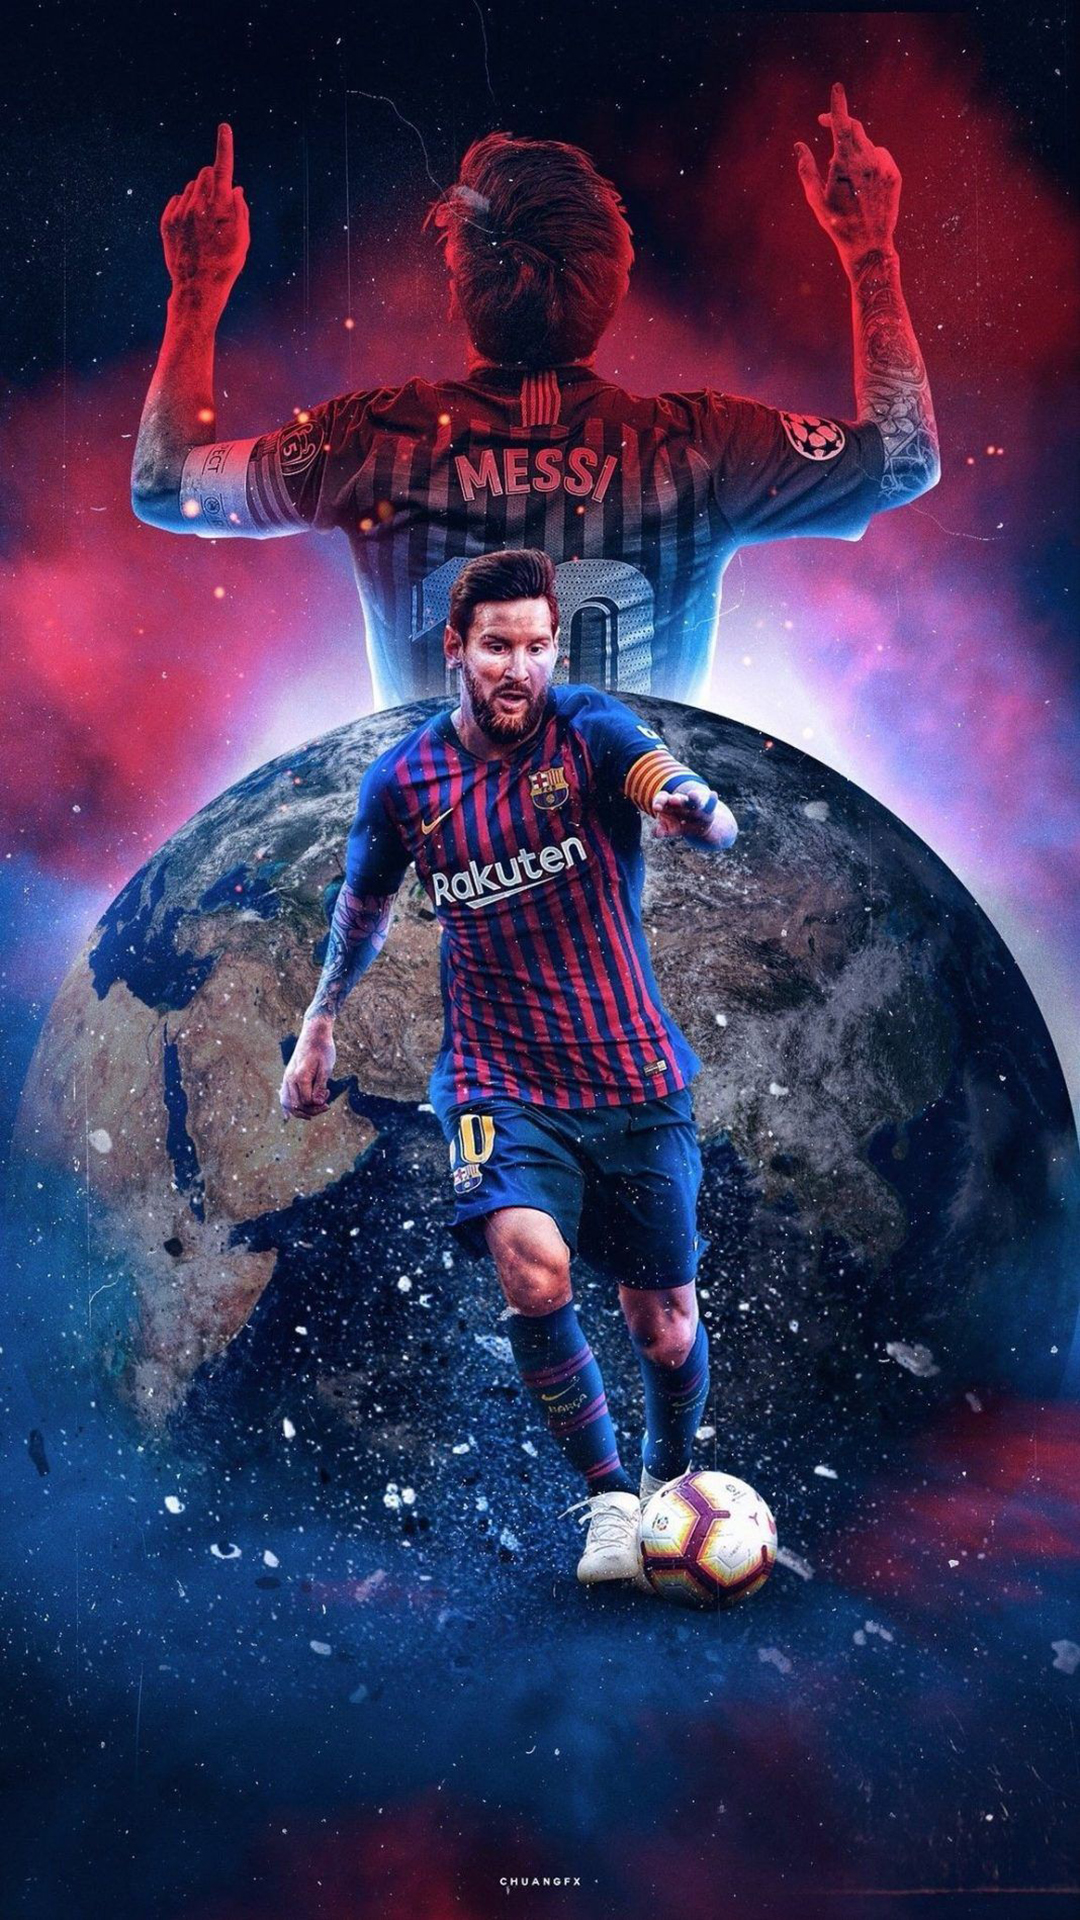 Hình Nền Messi: Hãy xem ngay bức hình nền về siêu sao bóng đá Lionel Messi, điều hòa tinh thần của bạn và thấy sự cân bằng giữa sự tinh tế và sự mạnh mẽ. Hình ảnh của Messi sẽ đem đến cho bạn không gian làm việc hoặc học tập mới mẻ, đầy năng lượng tích cực.